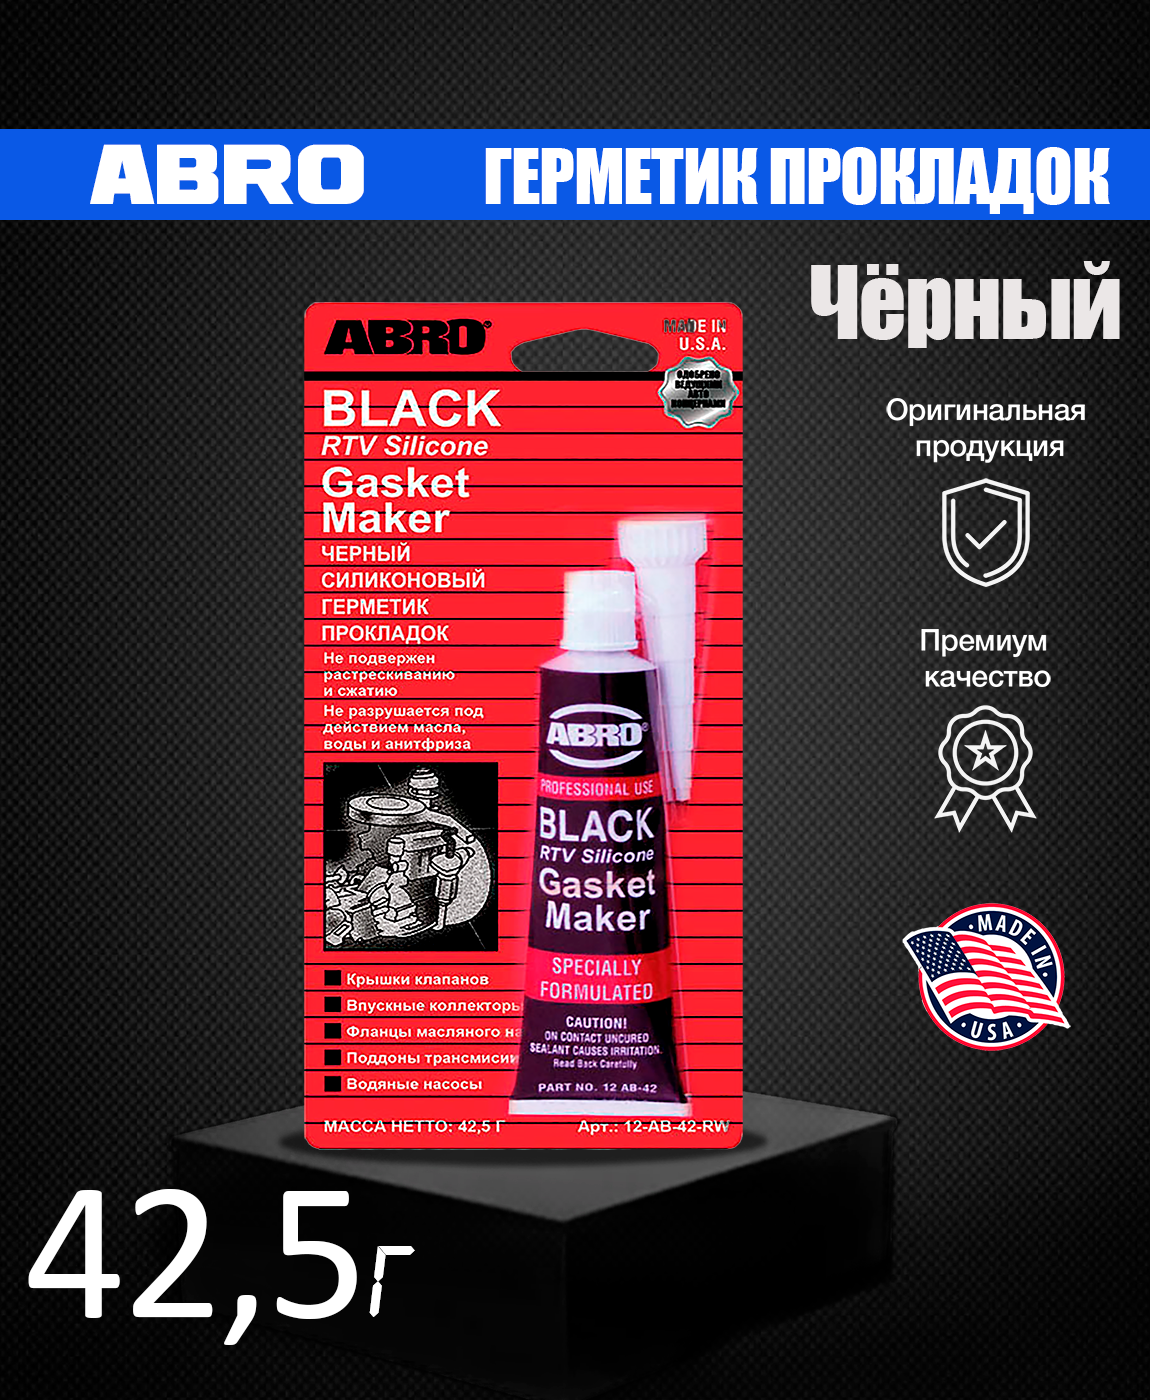 Герметик abro черный. Abro герметик прокладок черный. Abro Black RTV Silicone. Герметик RTV 118q.